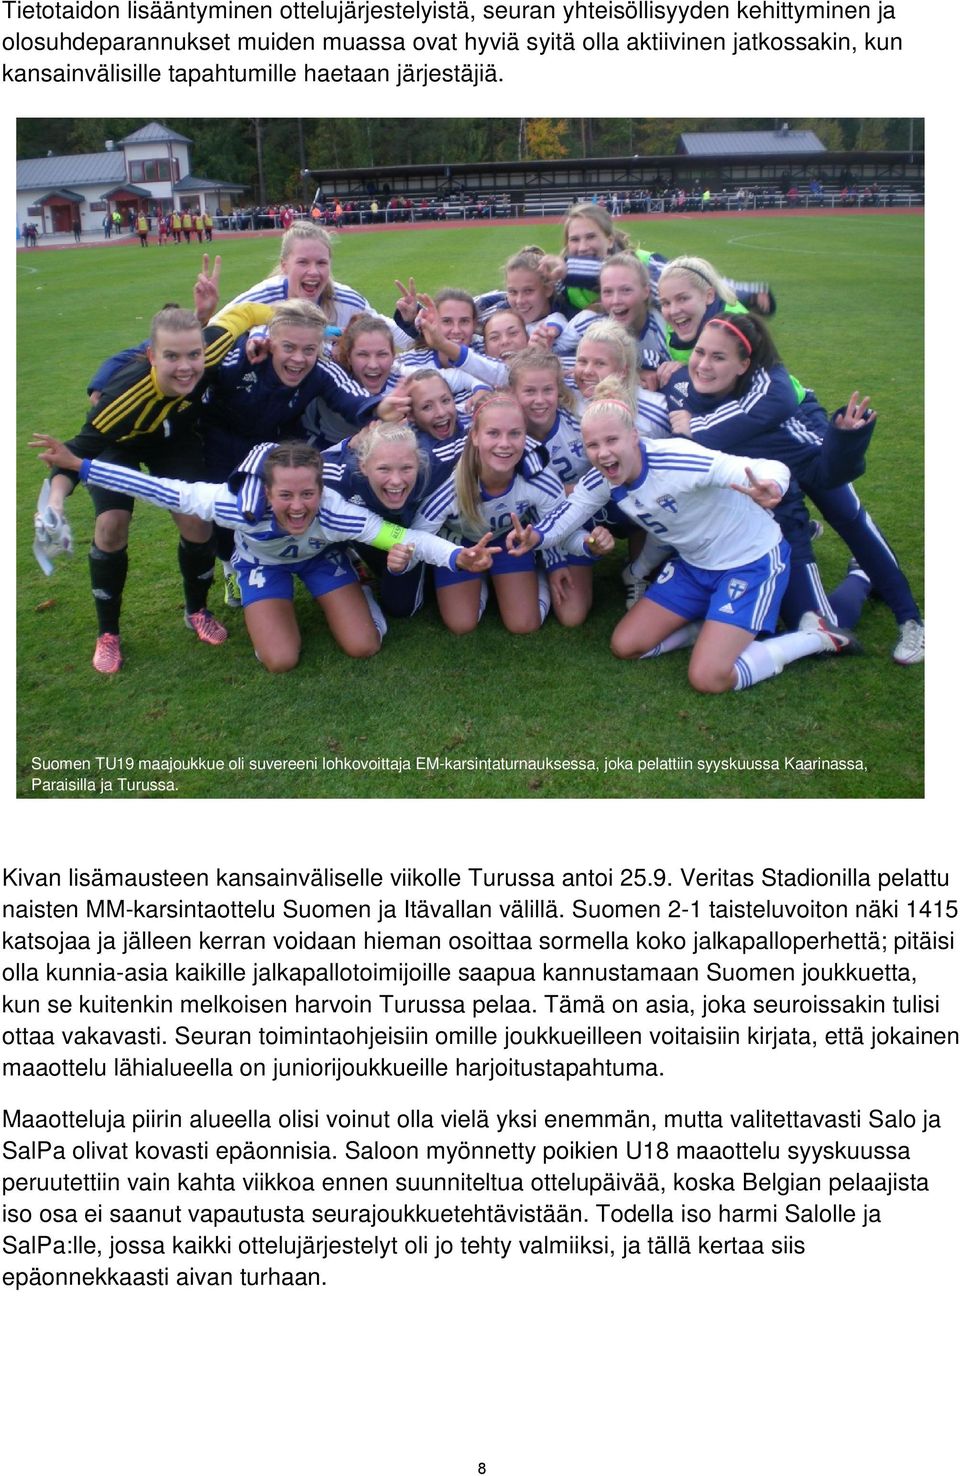 Kivan lisämausteen kansainväliselle viikolle Turussa antoi 25.9. Veritas Stadionilla pelattu naisten MM-karsintaottelu Suomen ja Itävallan välillä.